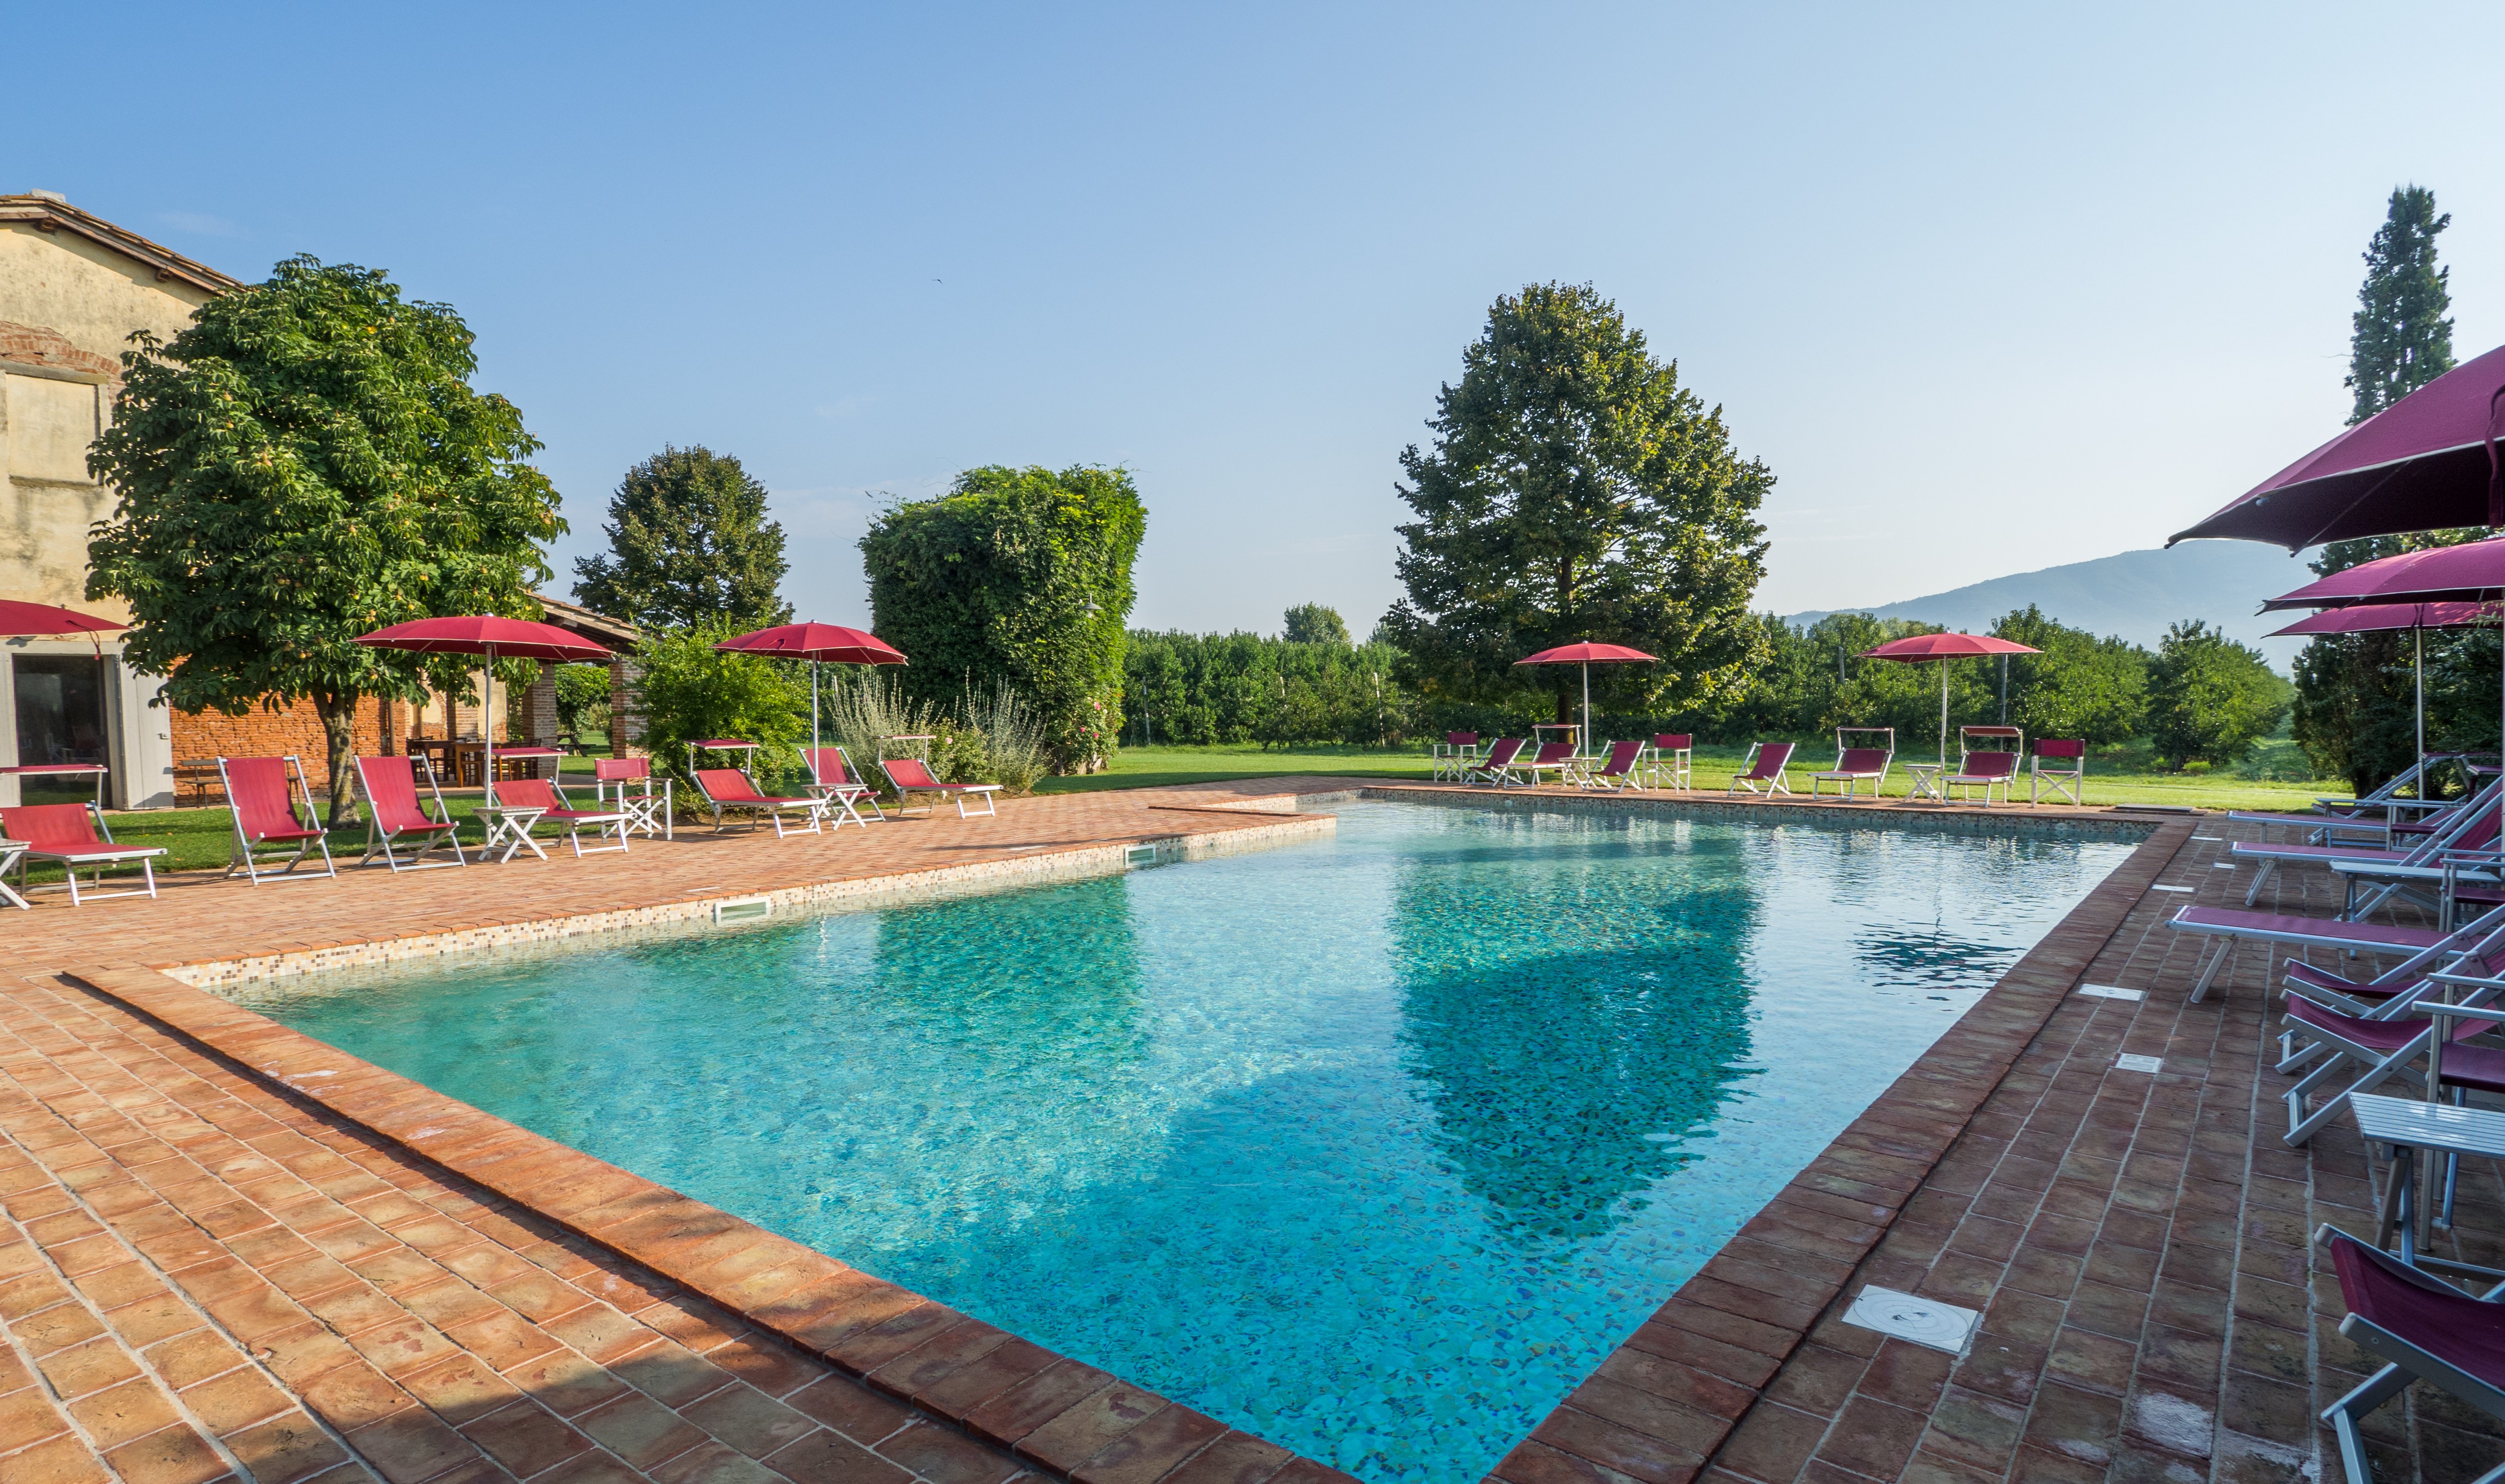 445_4b0e833_Foresteria di Fontarronco, vakantiehuis met zwembad, Toscane 4 (10) kopie